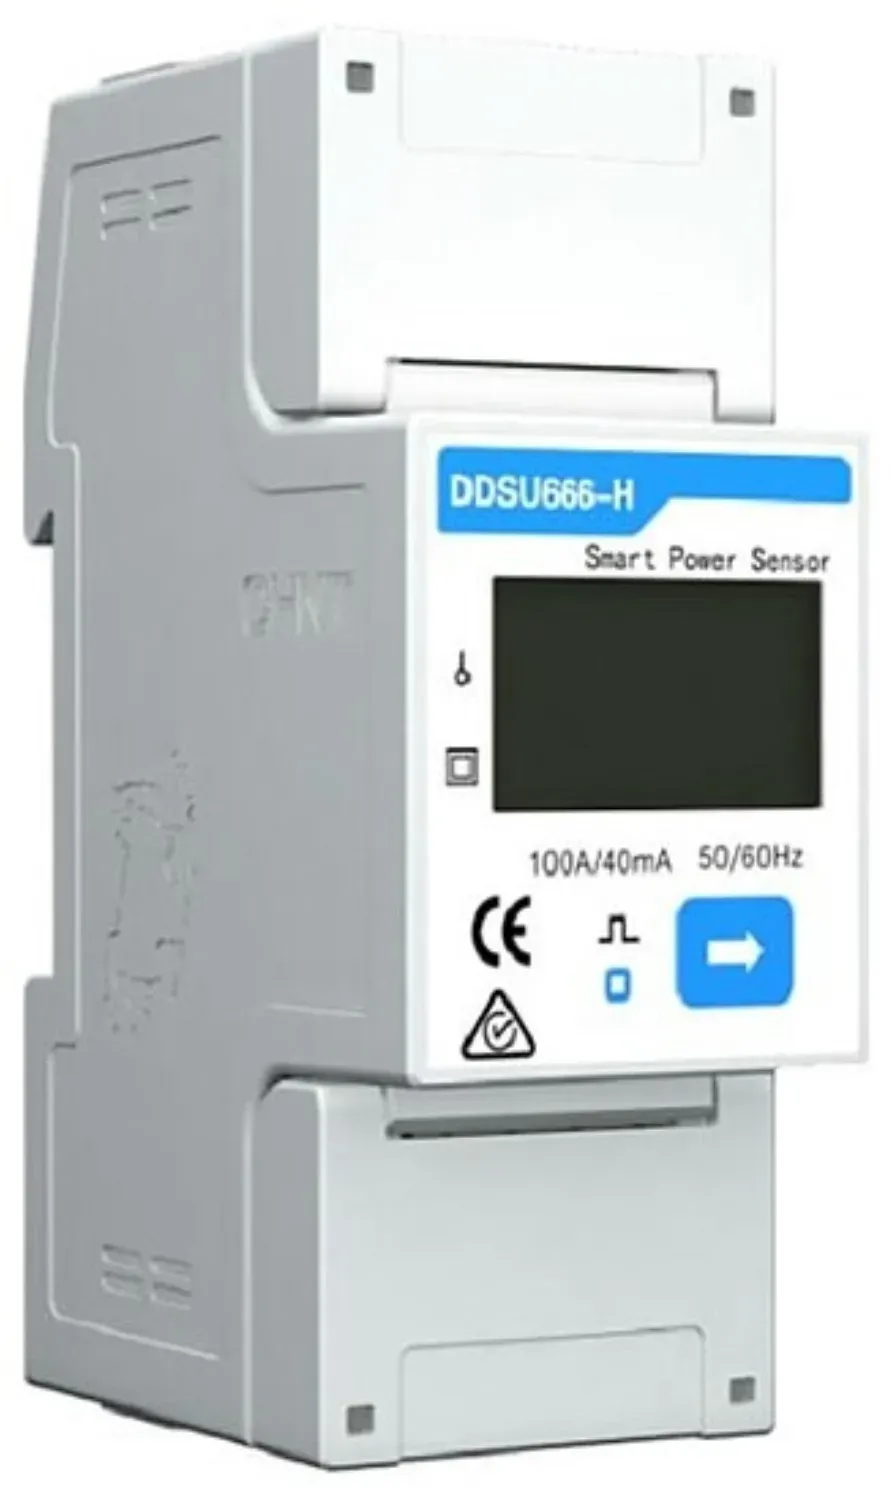 Huawei Smart Power Sensor DDSU666-H einphasiger Smartmeter - 19%